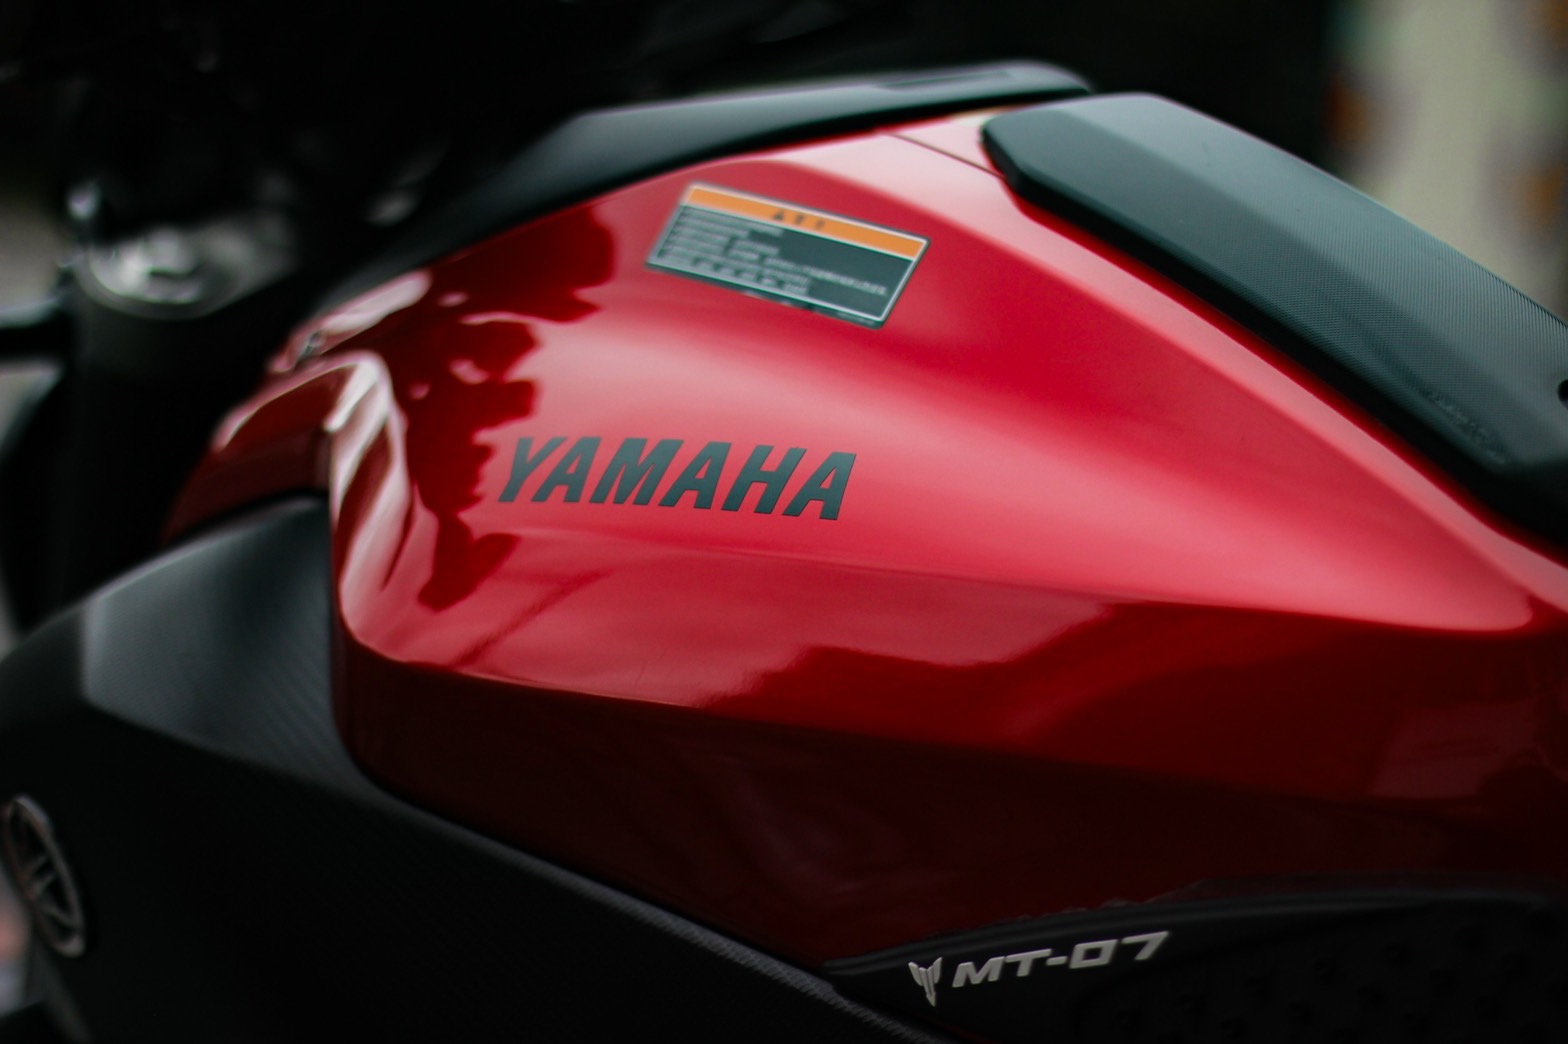 YAMAHA MT-07 - 中古/二手車出售中 2016 MT07 ABS 超低里程 車況漂亮 | 一拳車業